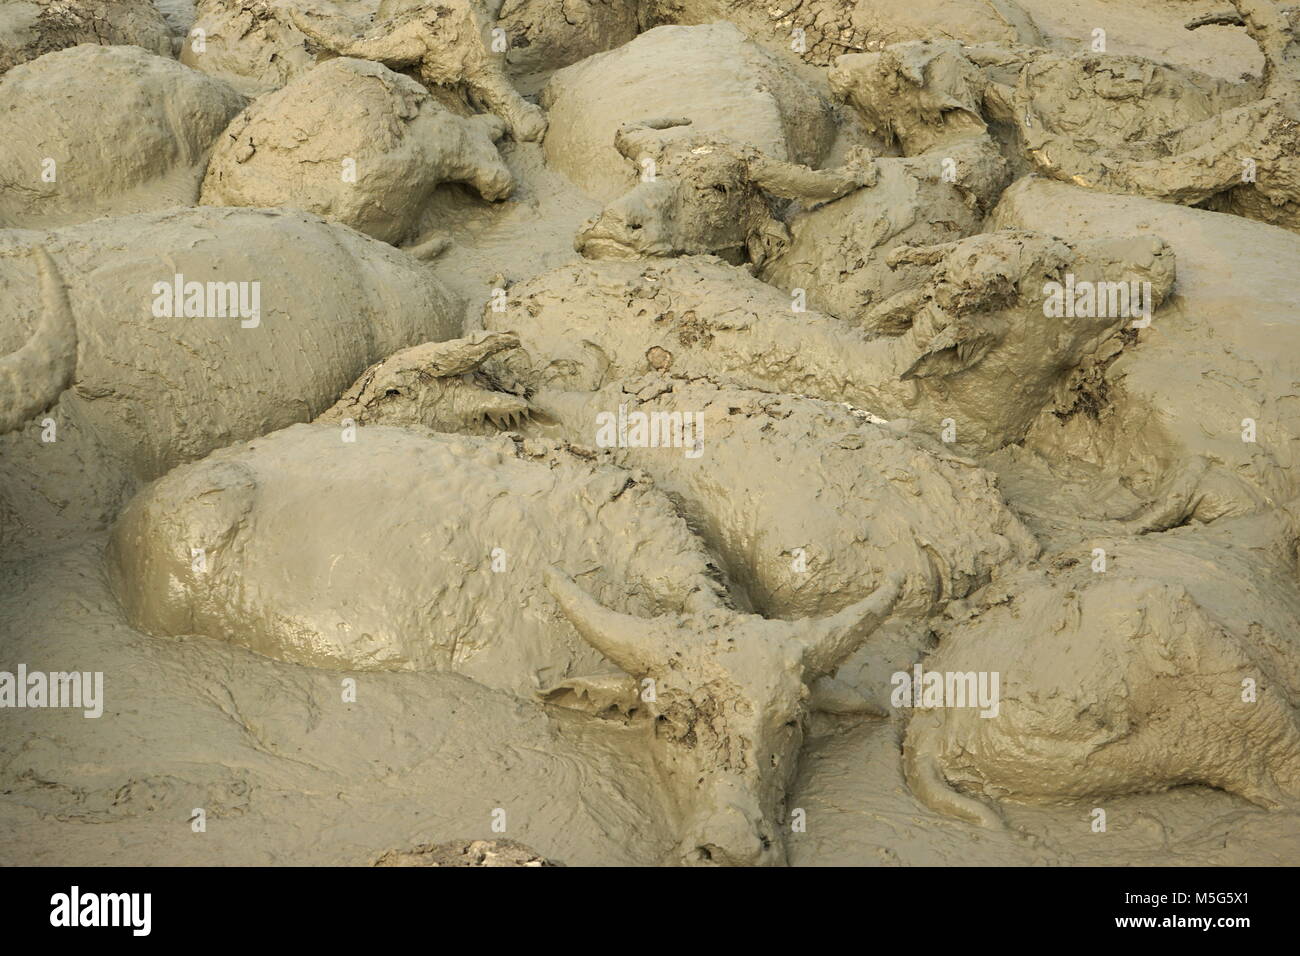 Water Buffalos Wallowing in a Mud Pool near Vang Vieng, Laos Stock Photo